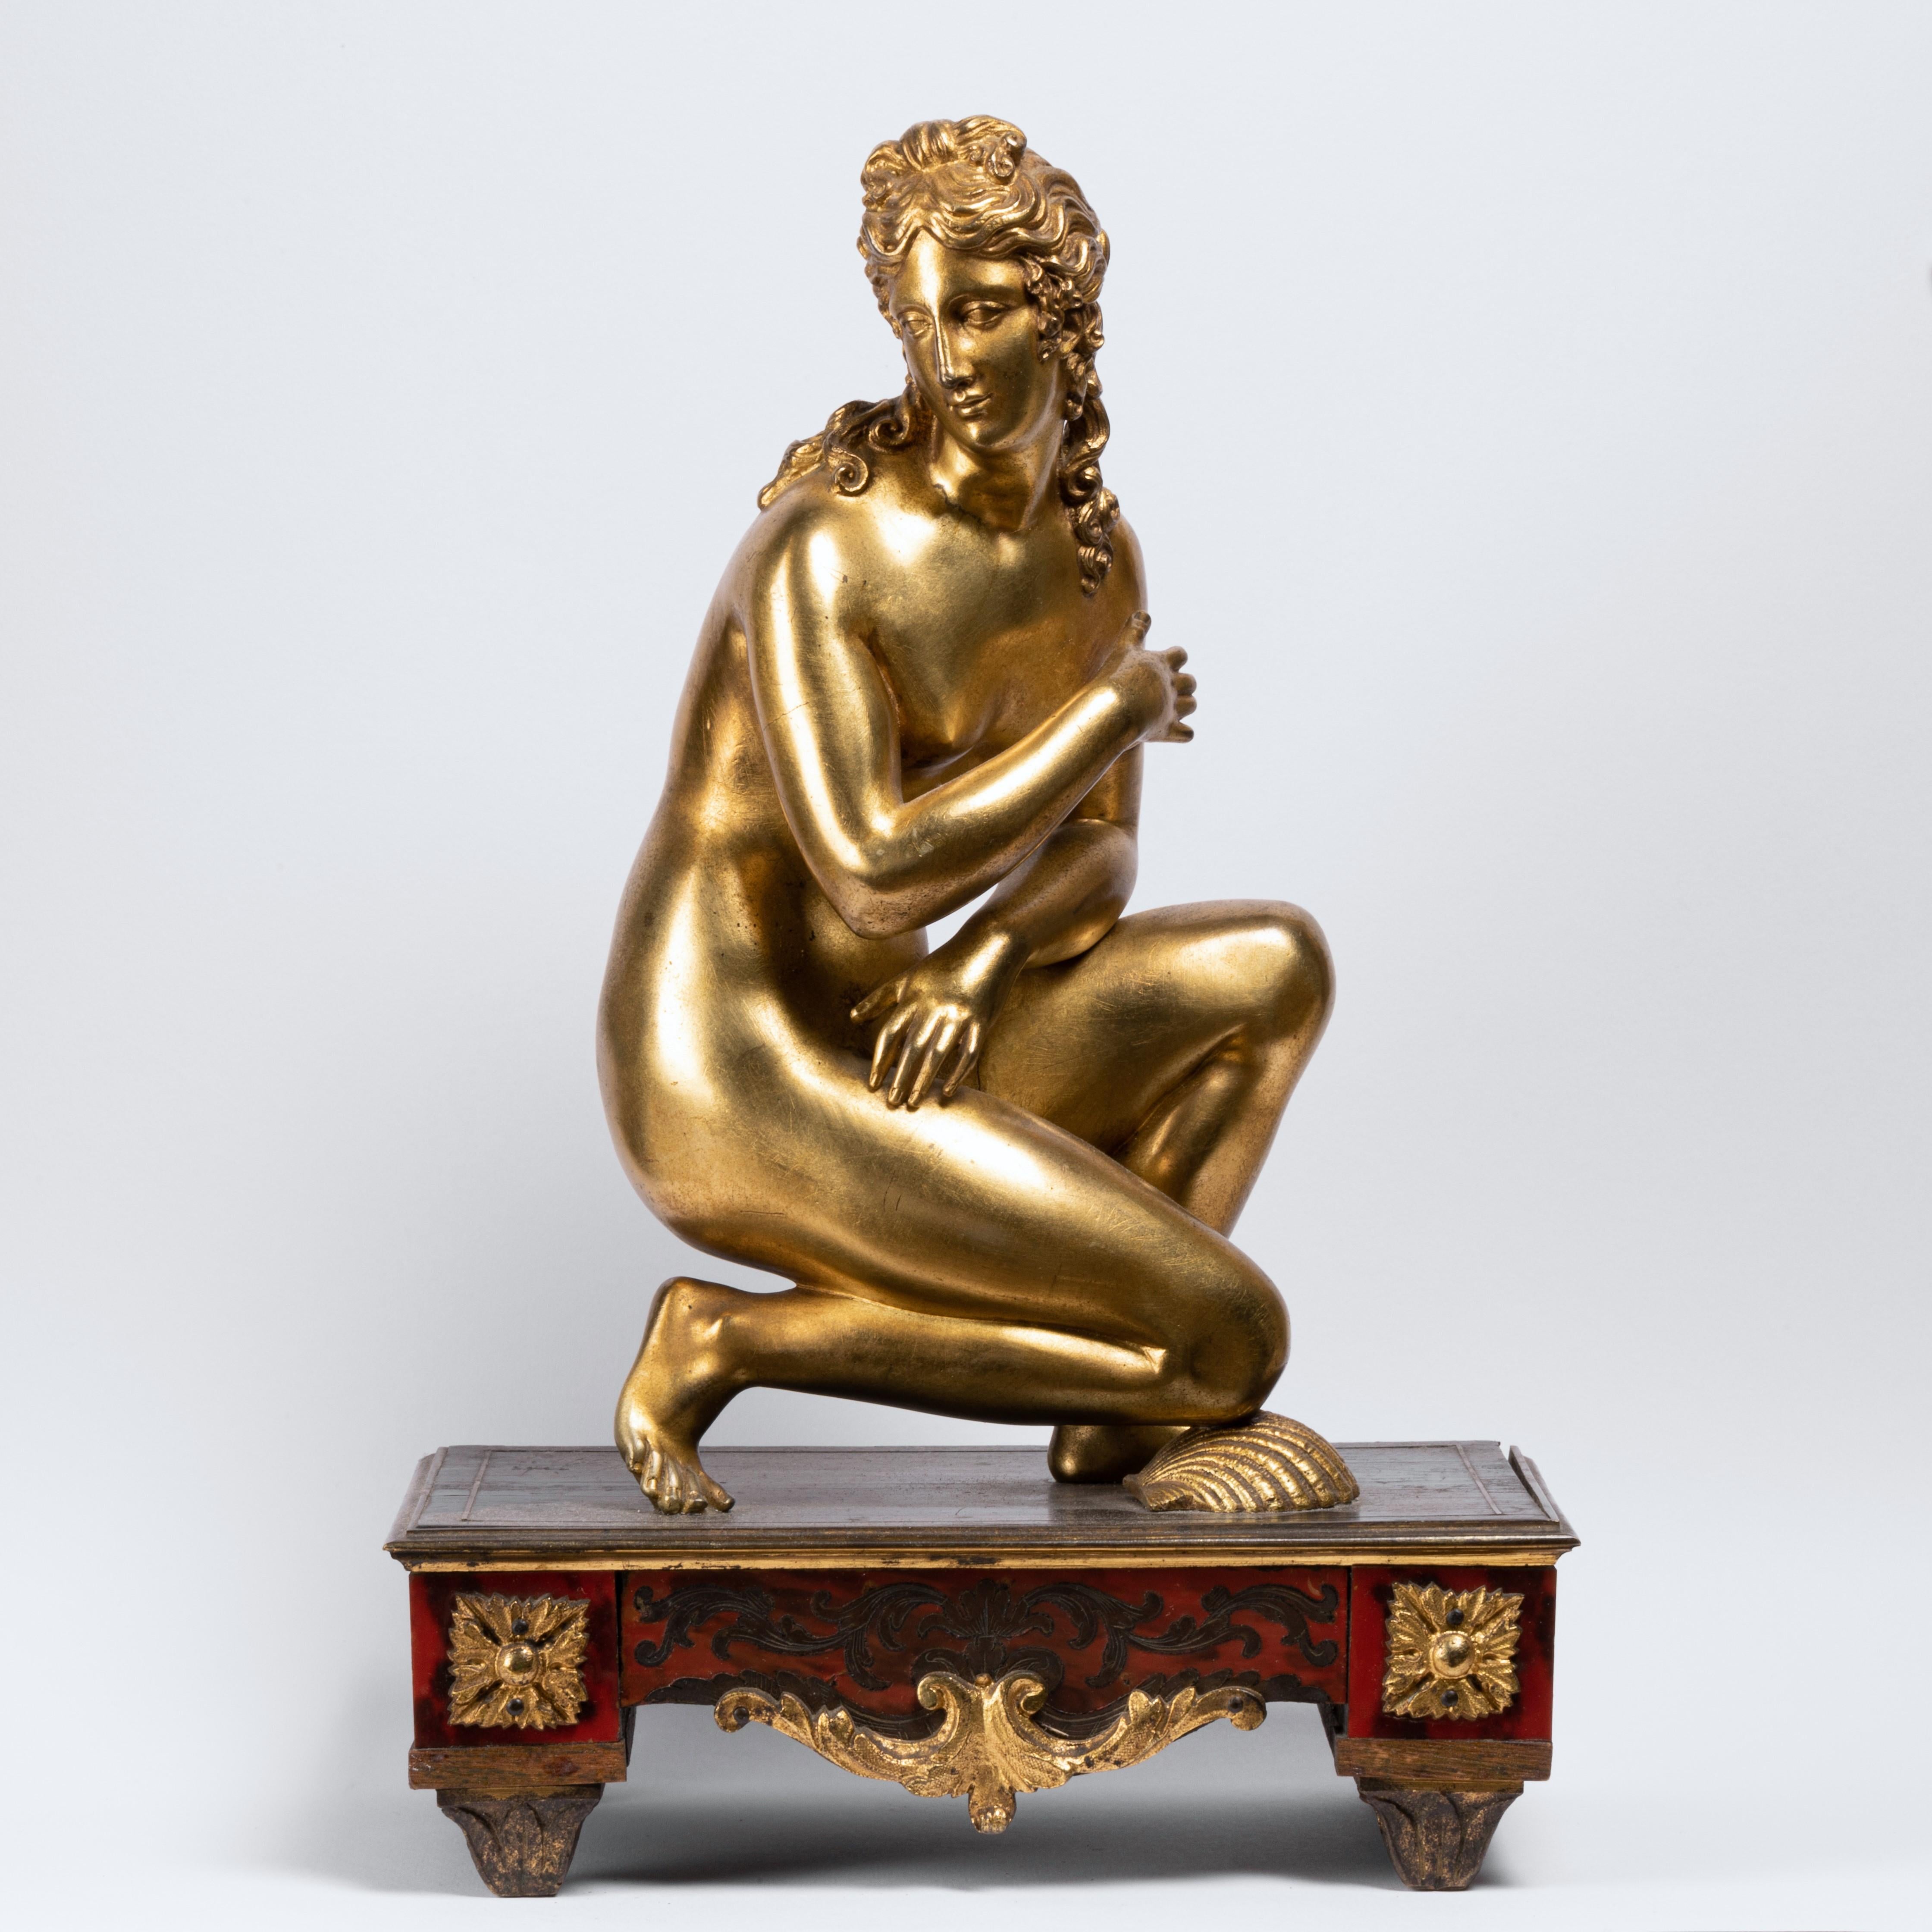 Figure de Vénus accroupie en bronze doré de la fin du XVIIe siècle (France) 
Vénus accroupie en bronze doré sur un piédestal décoré de marqueterie Boulle et d'ornements en bronze doré.
La déesse est représentée nue, accroupie et surprise au sortir